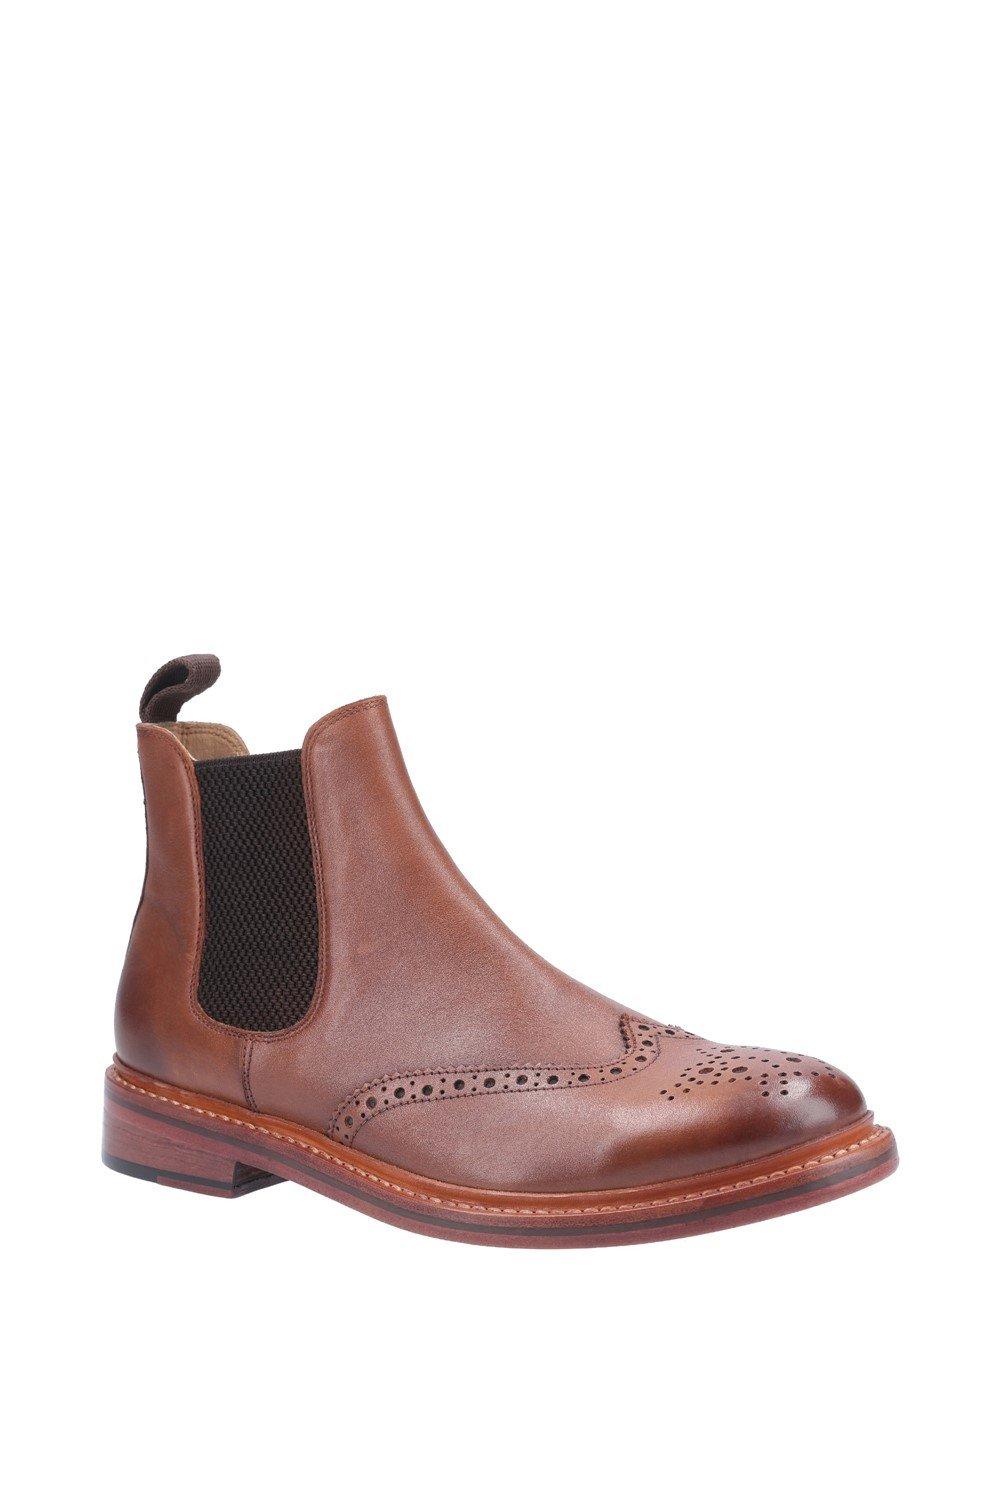 Кожаные ботинки Сиддингтон Cotswold, коричневый